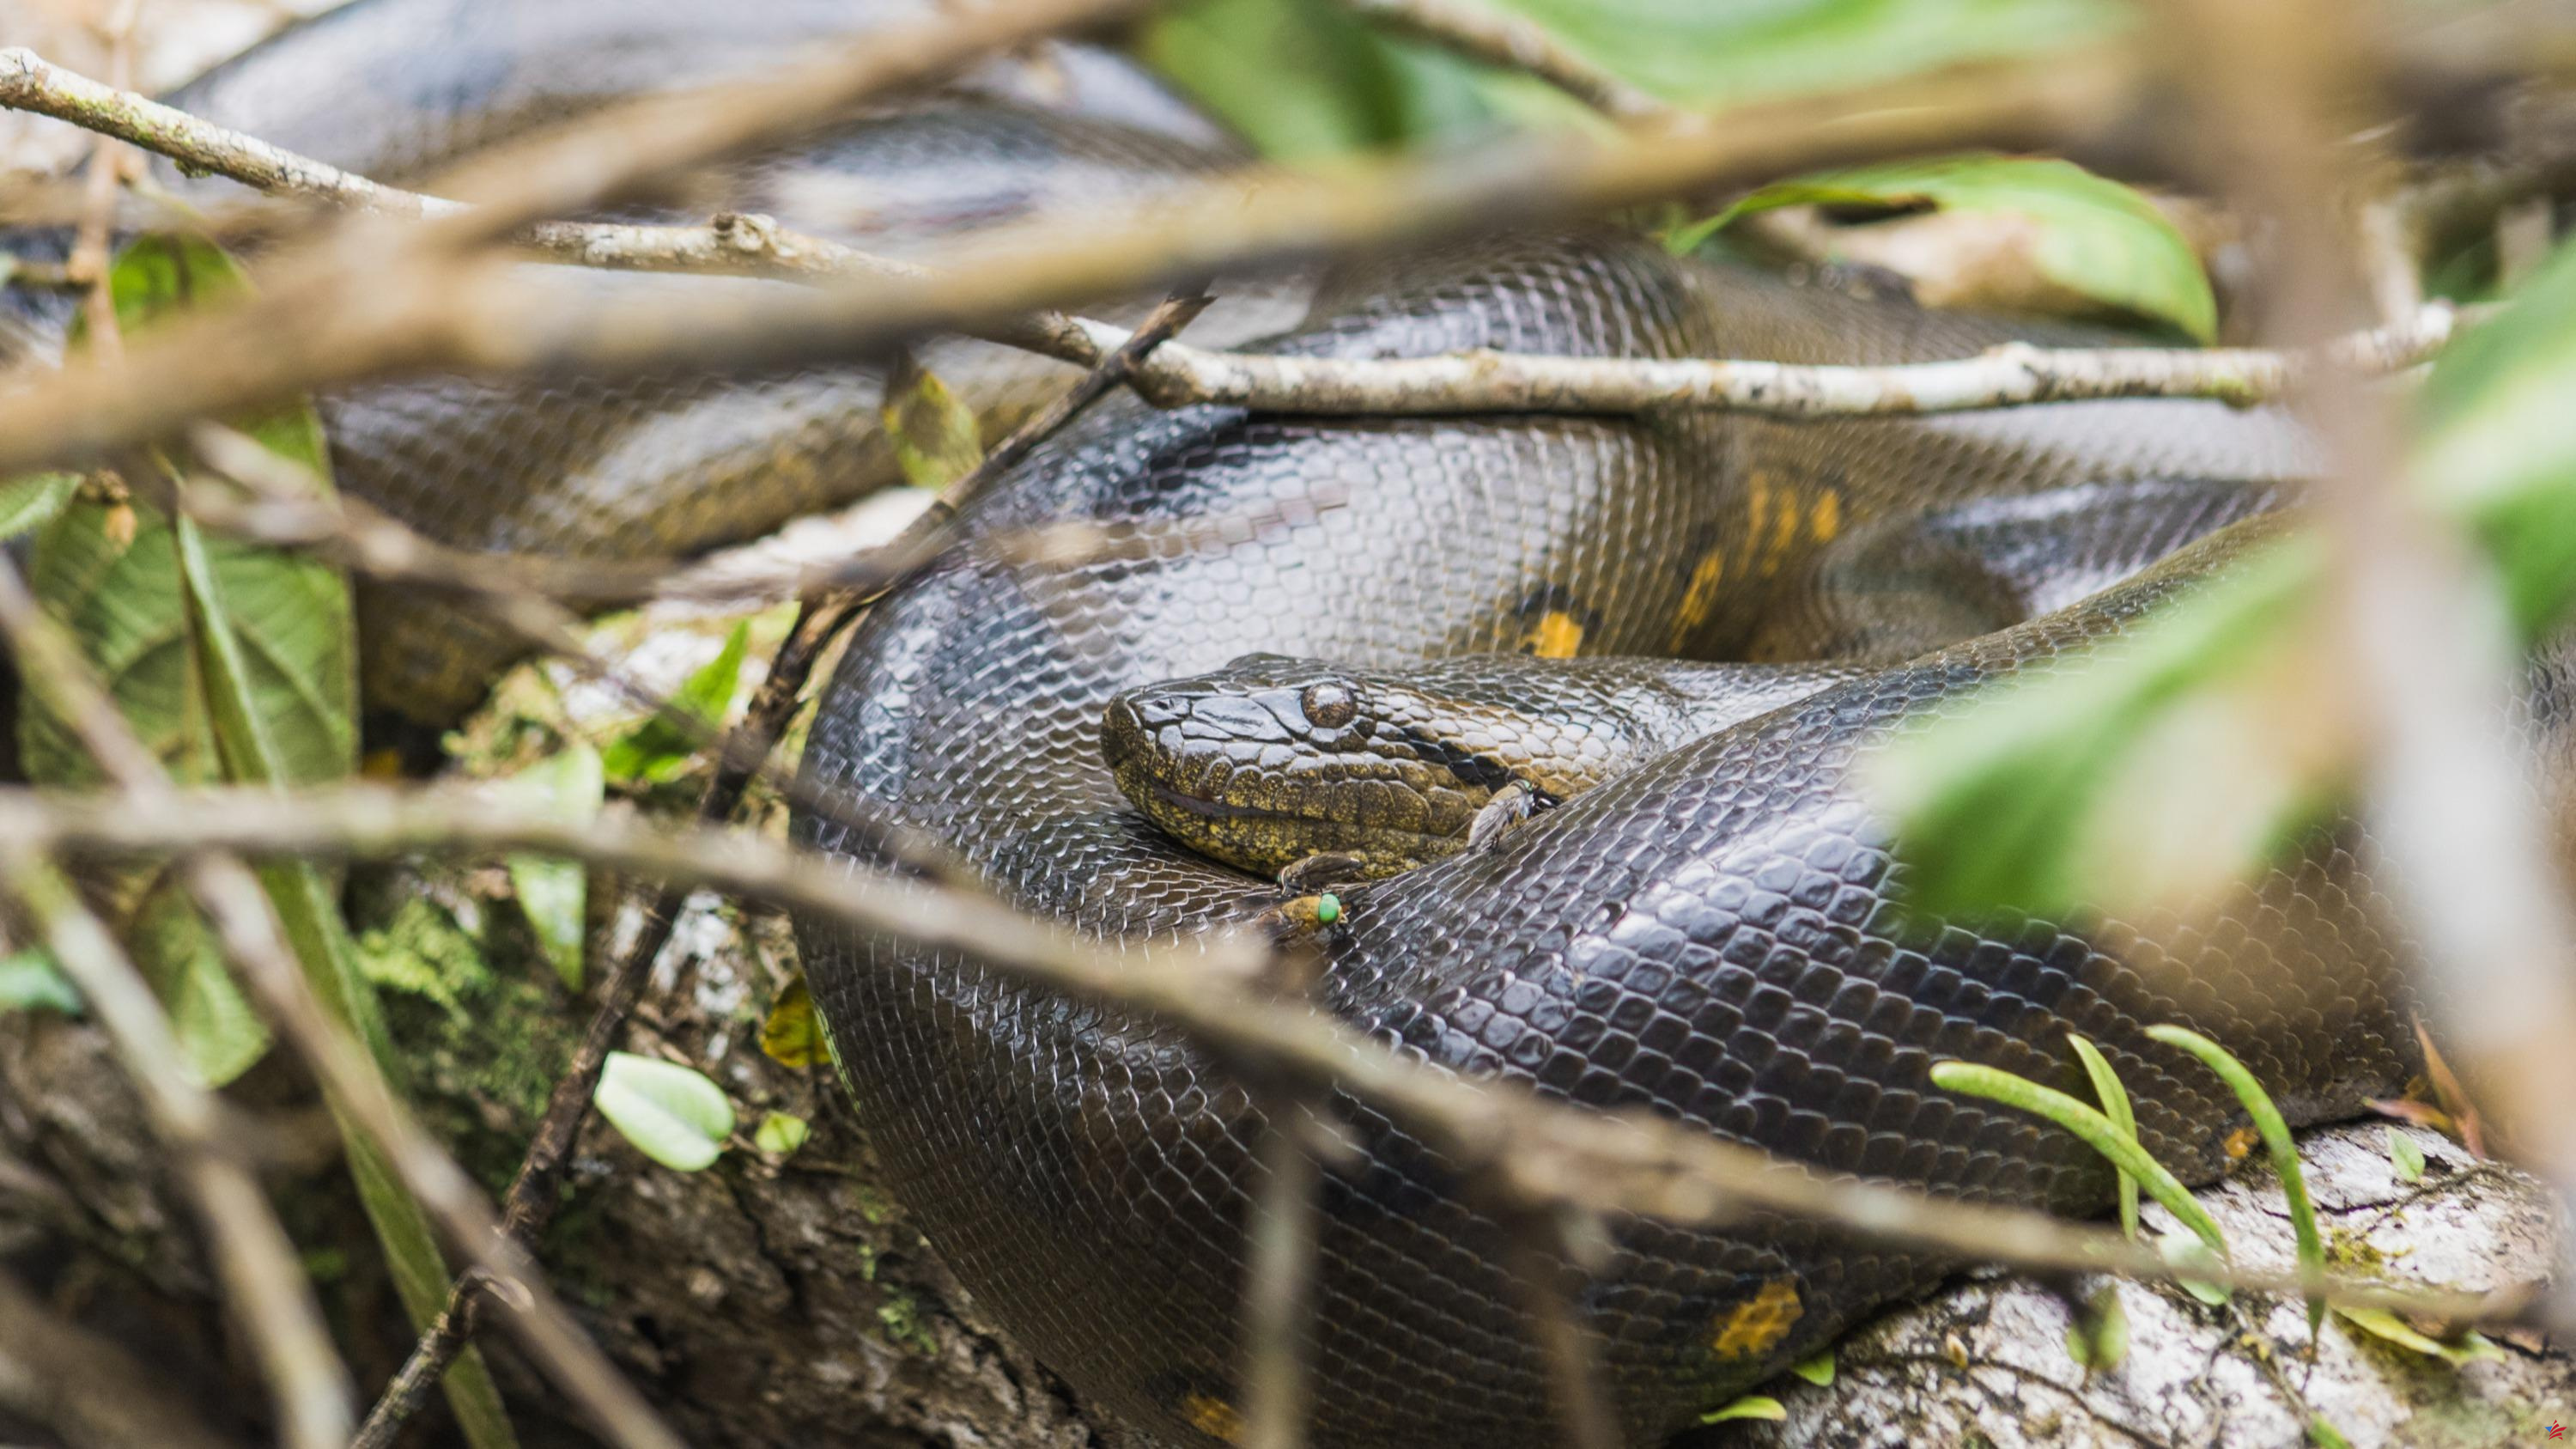 ¿Realmente se ha descubierto una nueva anaconda gigante en Brasil?